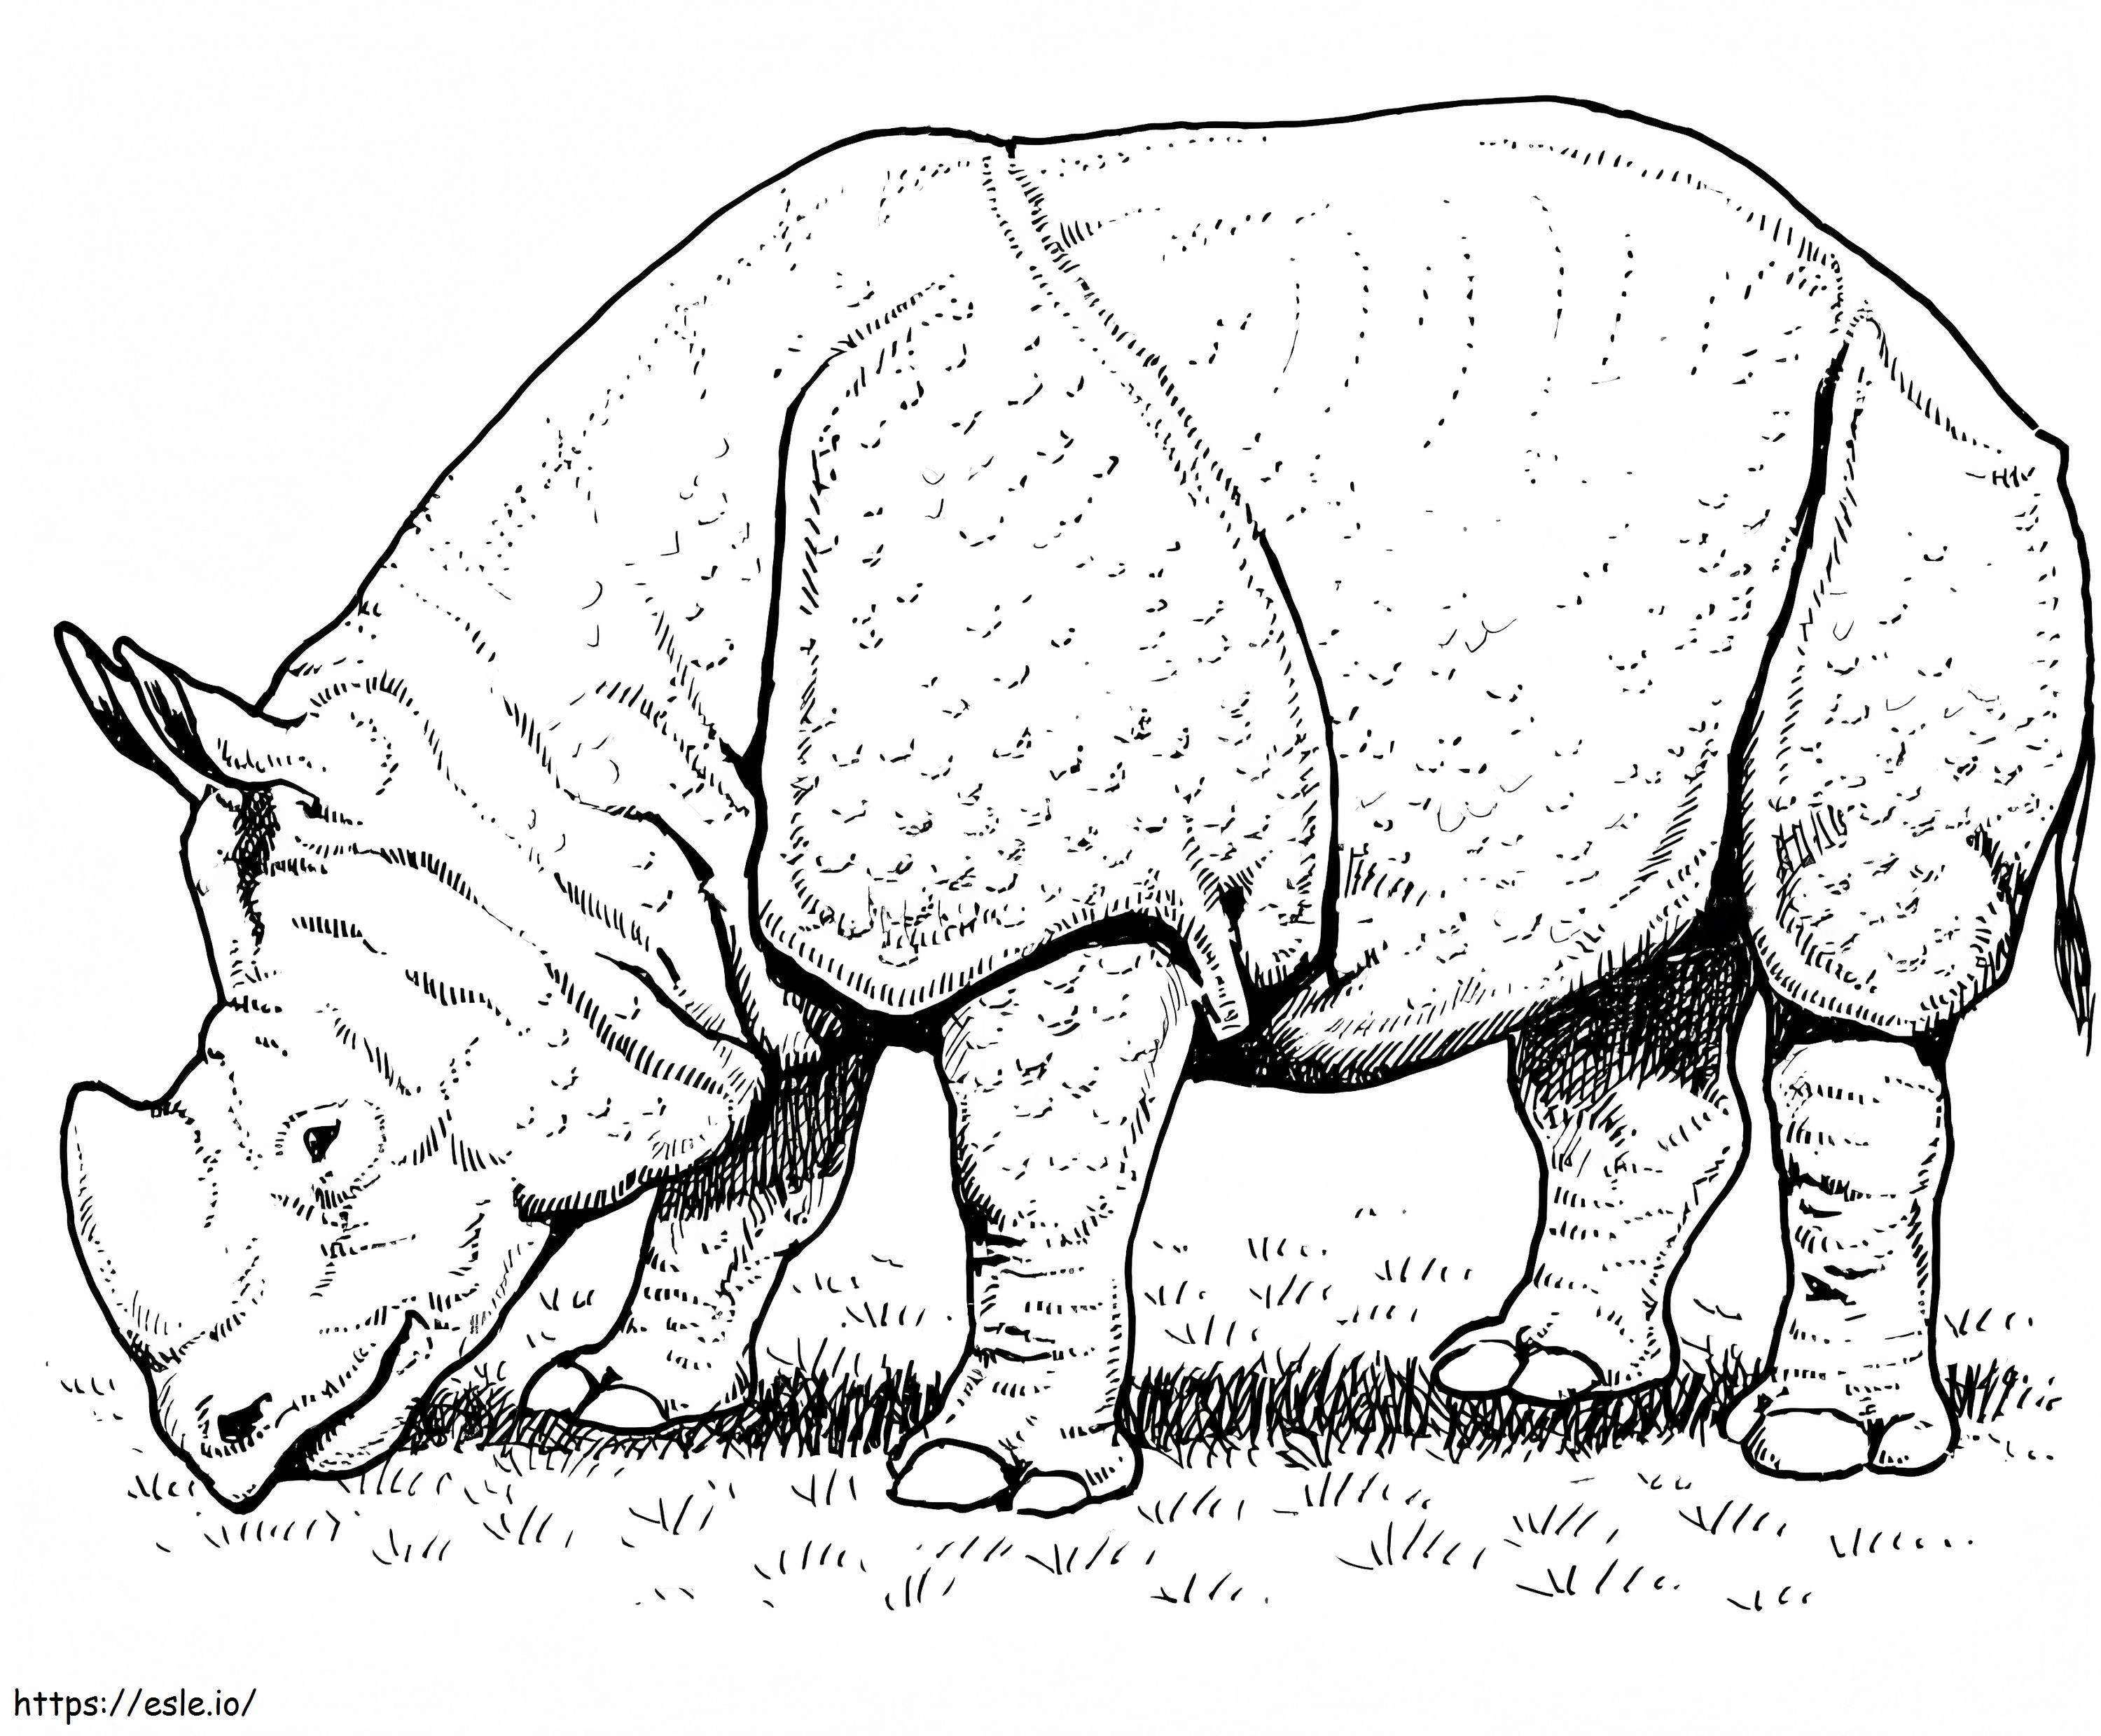 Rinoceronte indiano da colorare